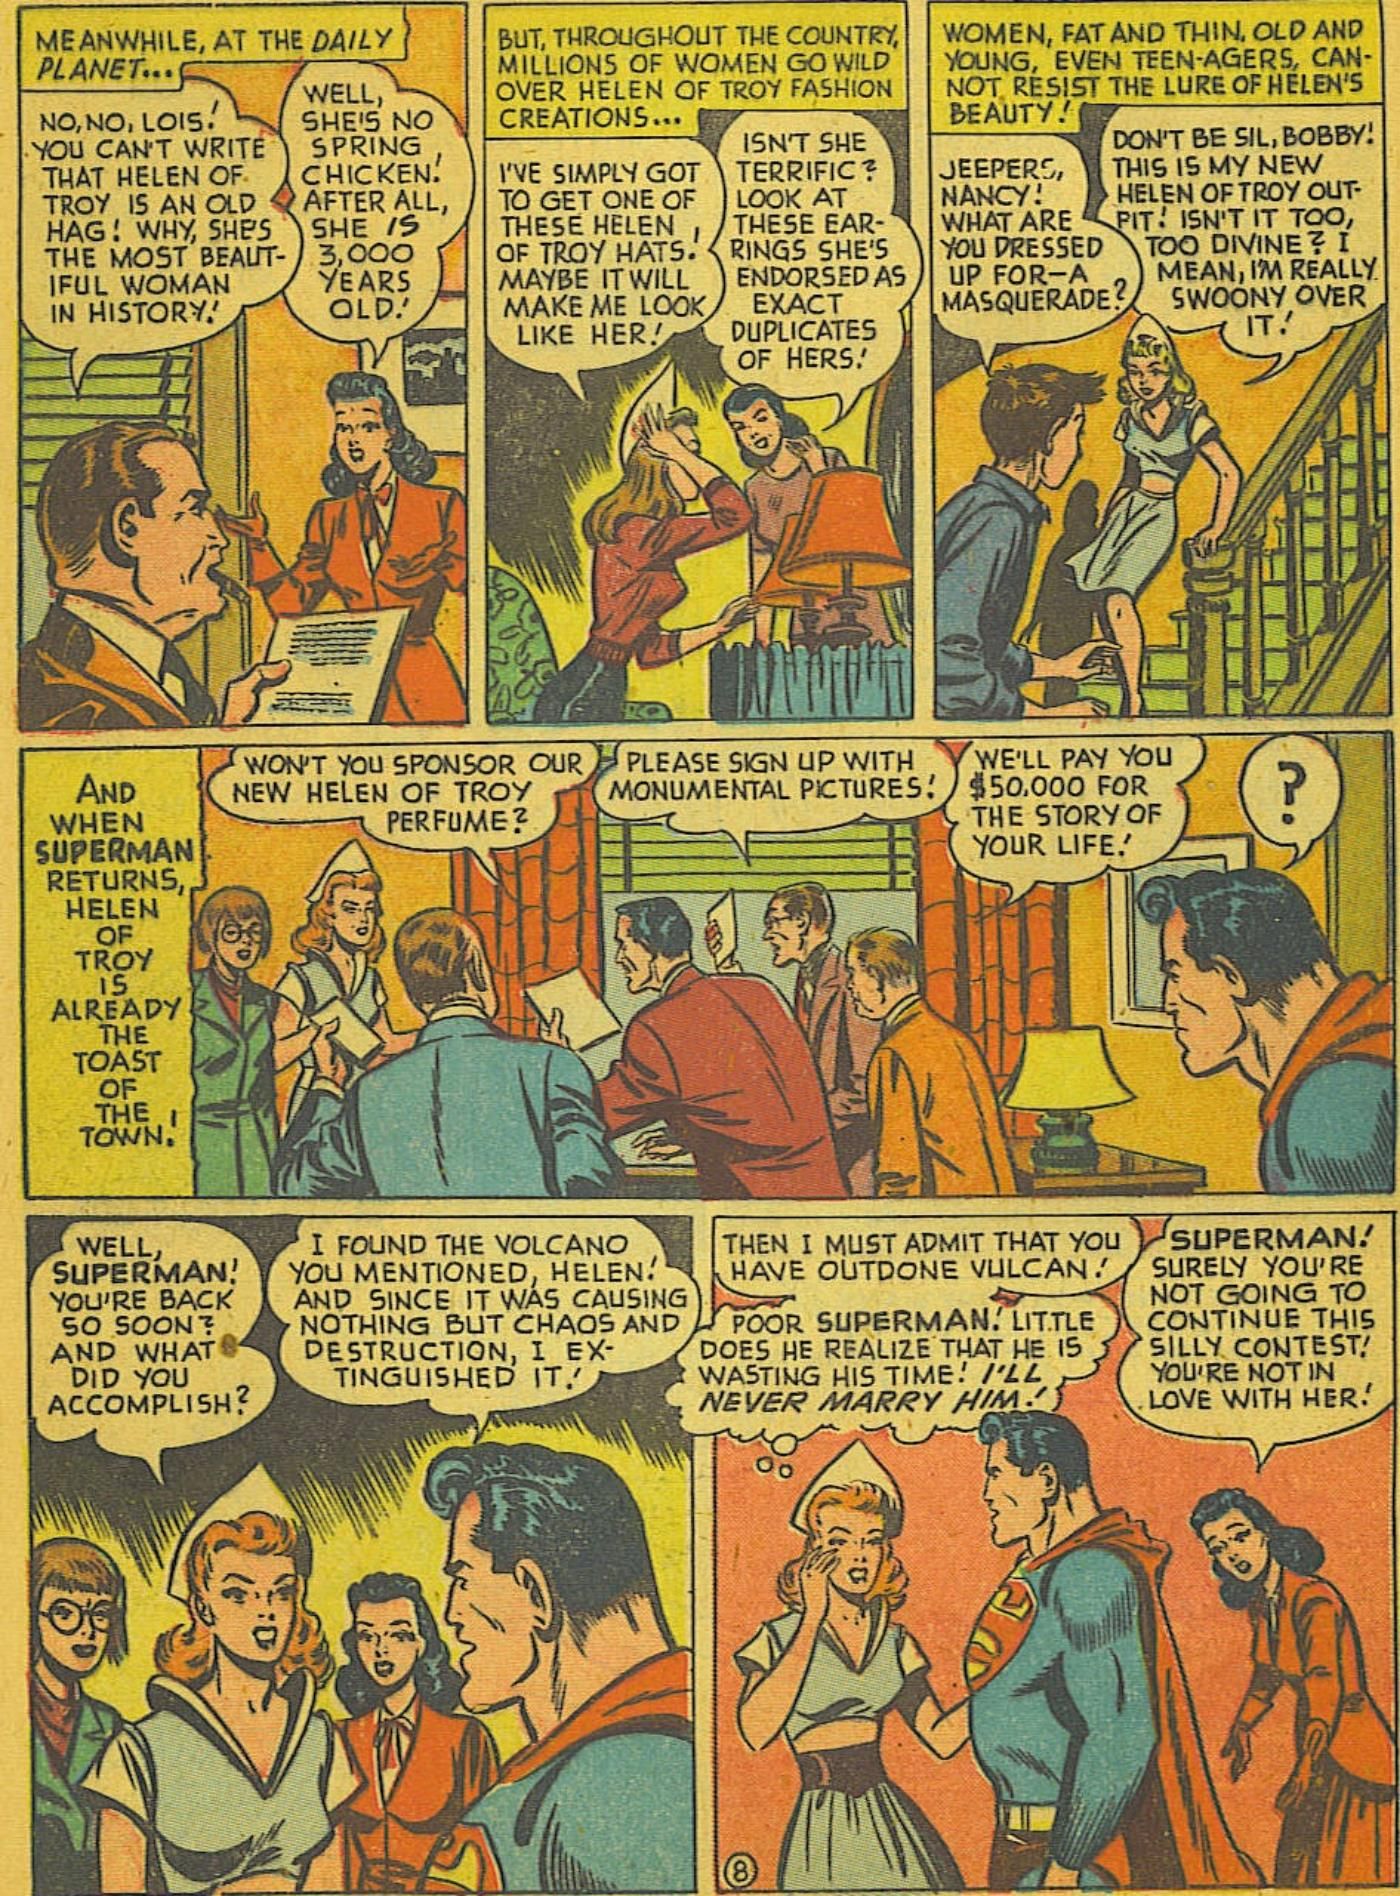 75 лет назад Супермен был в любовном треугольнике с Лоис и... Еленой Троянской.